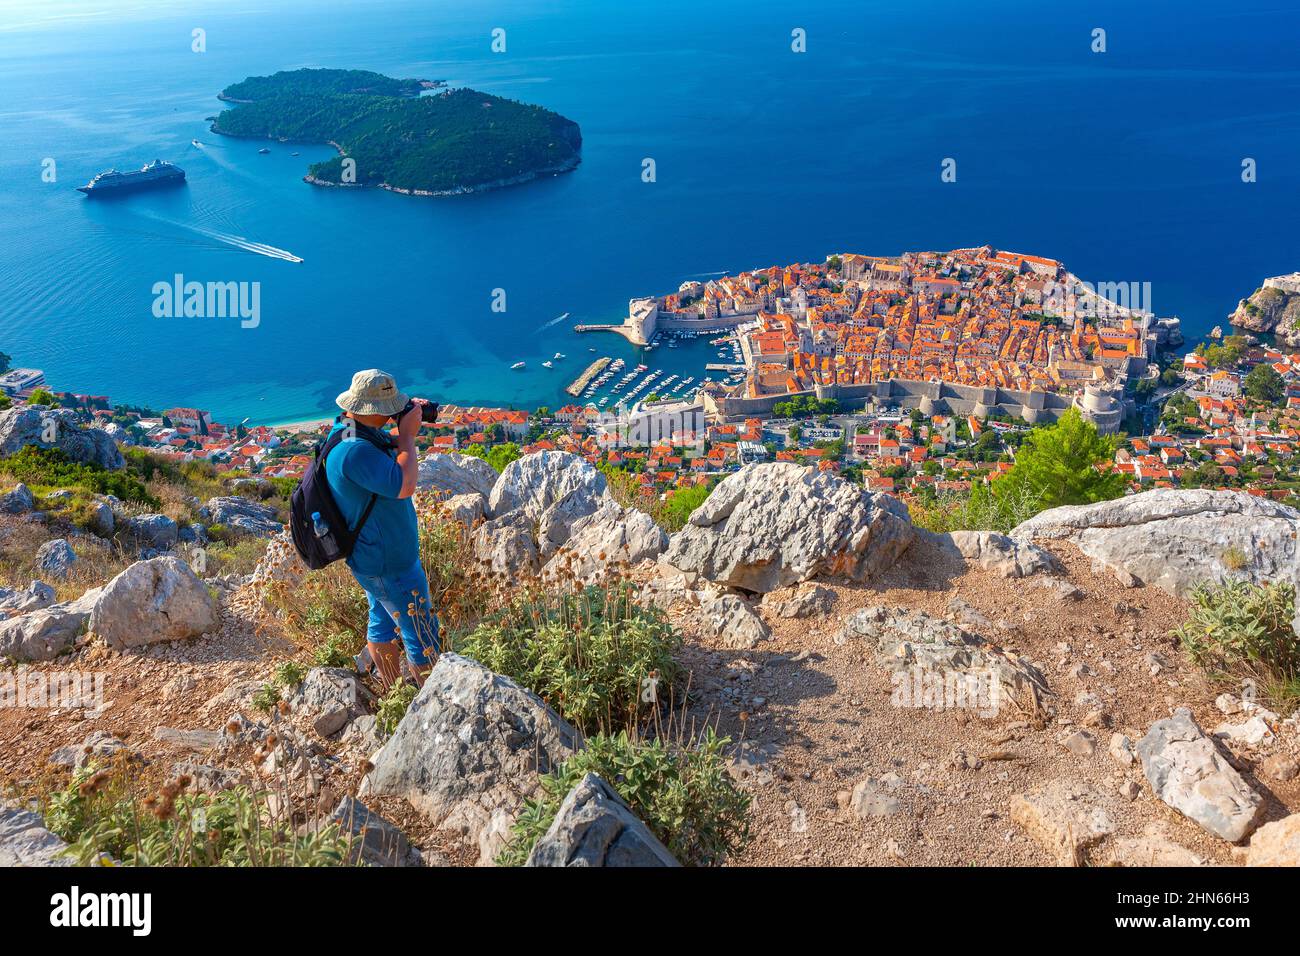 Photographe voyageur prend une photo de la vue aérienne du Vieux Port et du fort St Ivana à Dubrovnik, Croatie Banque D'Images